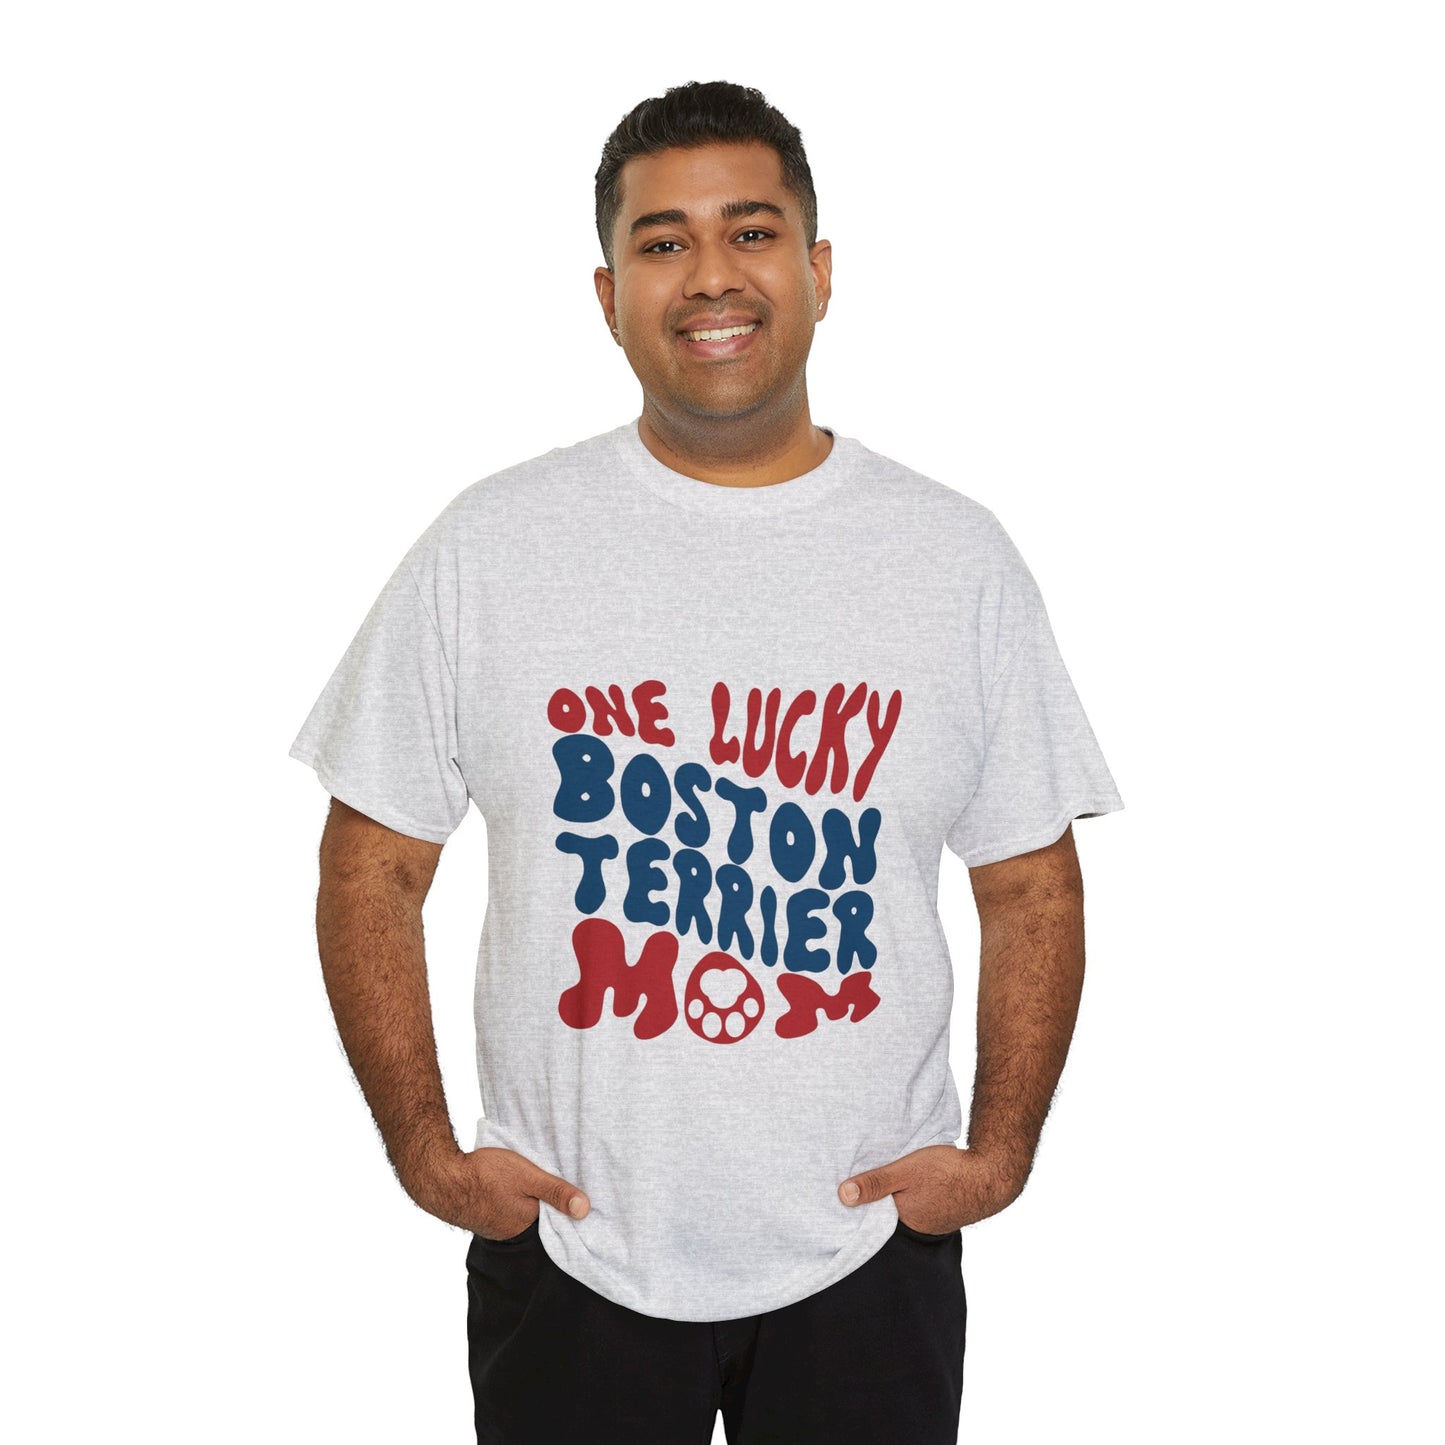 Rhett - Unisex Tshirts for Boston Terrier Lovers